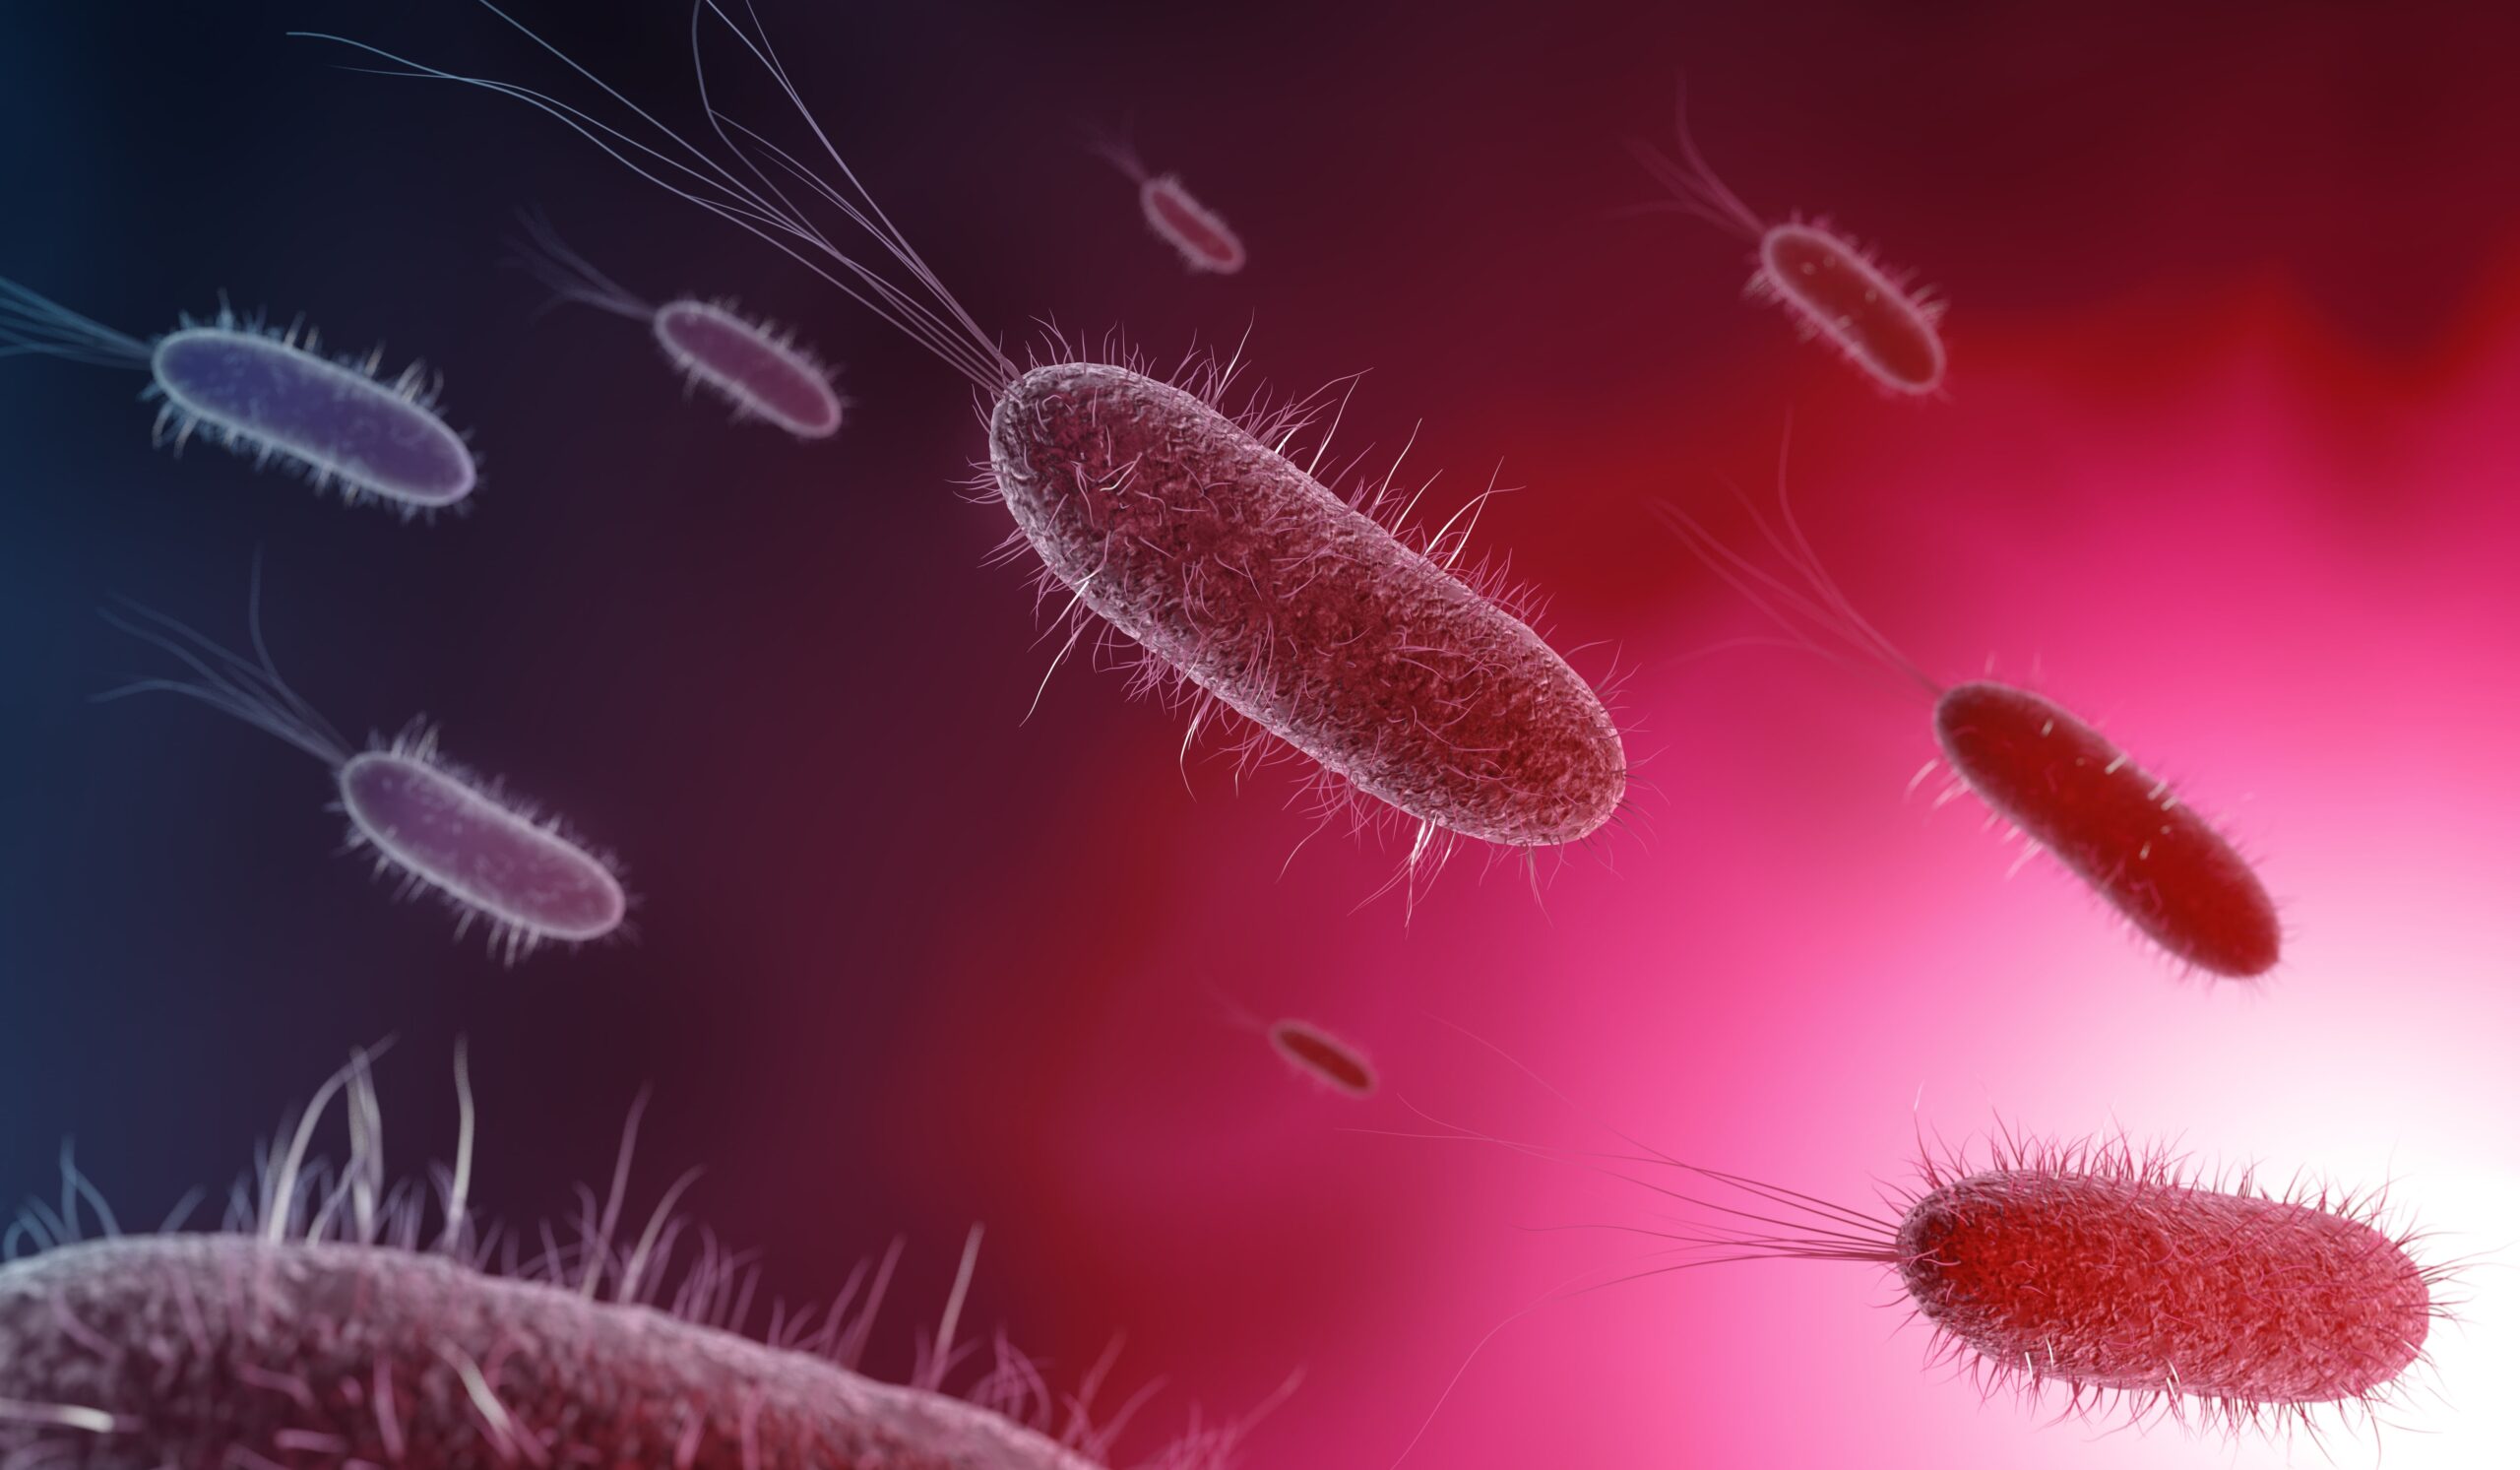 Bacterias buenas, ¿para qué sirven?